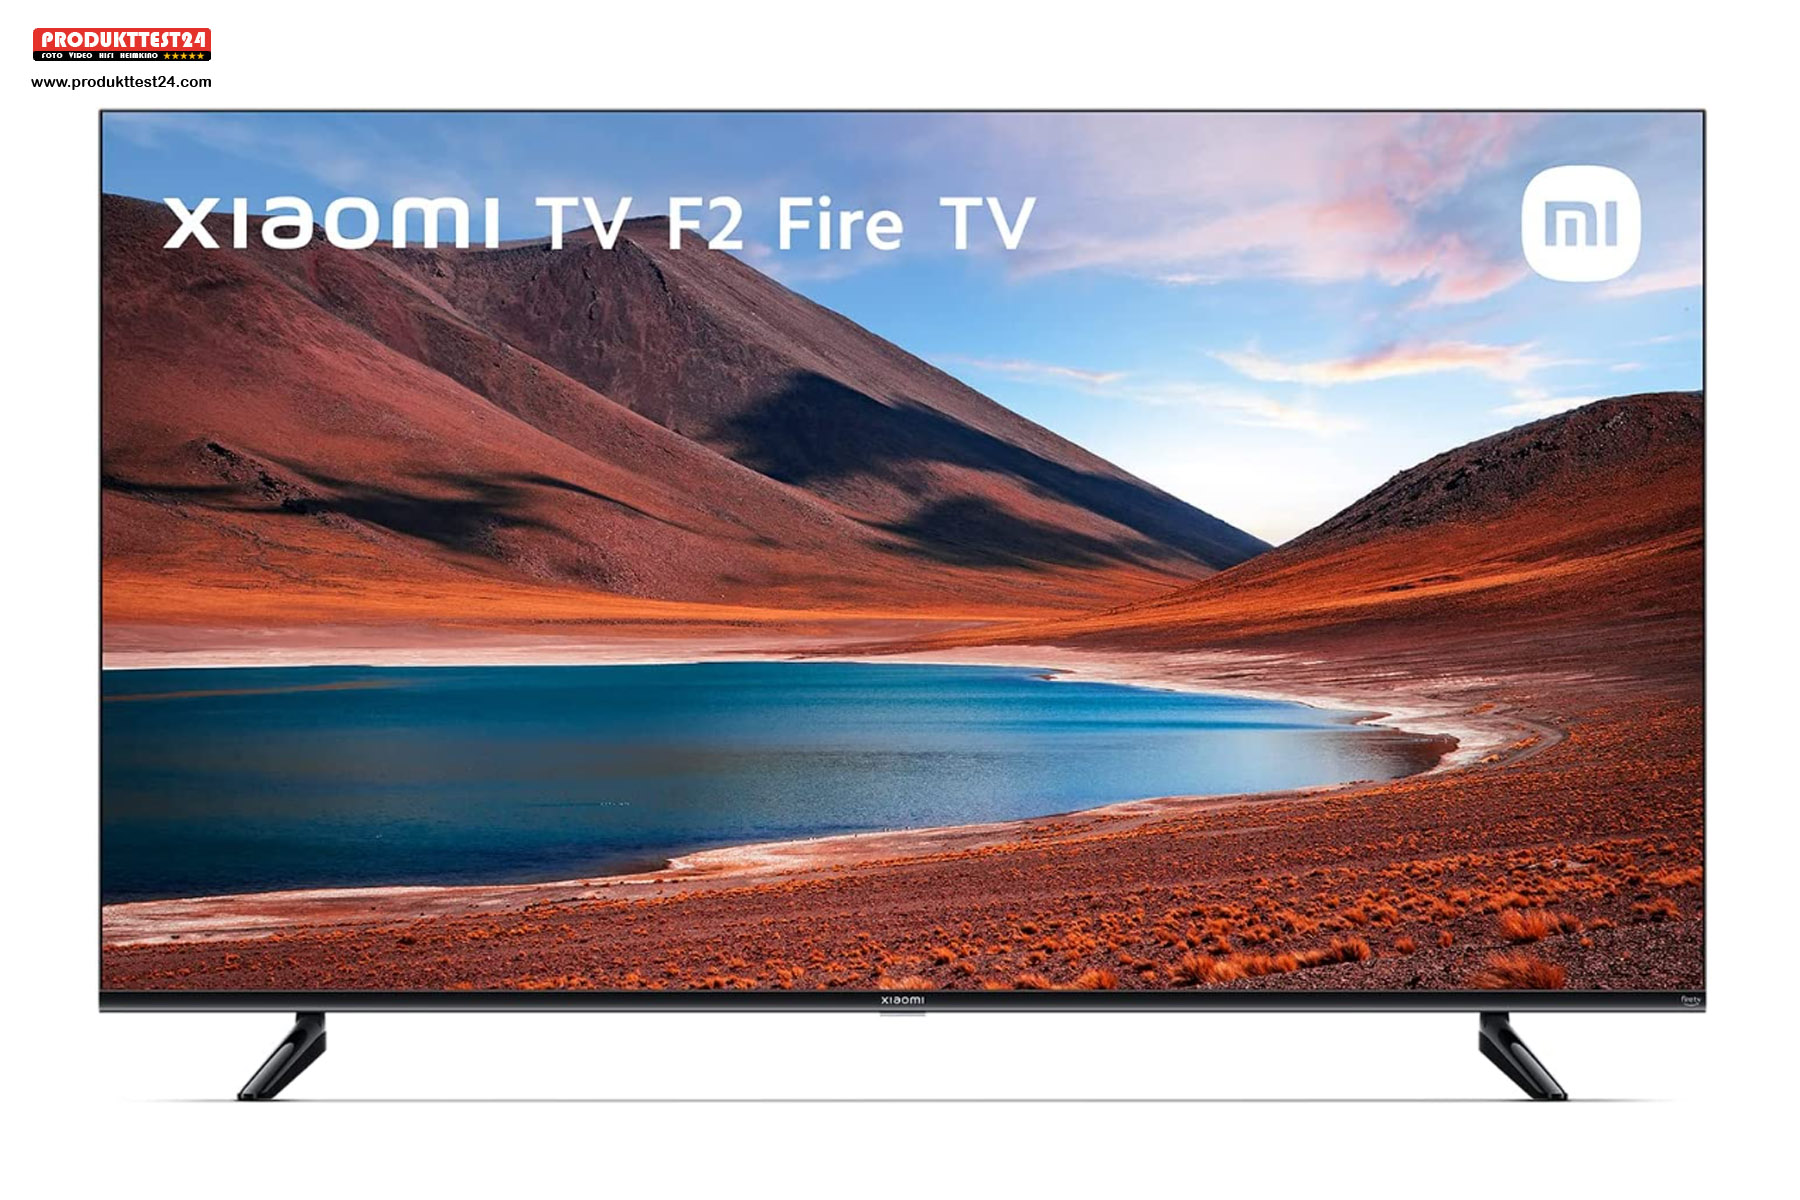 Der Xiaomi F2 Fire TV 50" mit Amazon Fire TV und Alexa Sprachsteuerung.